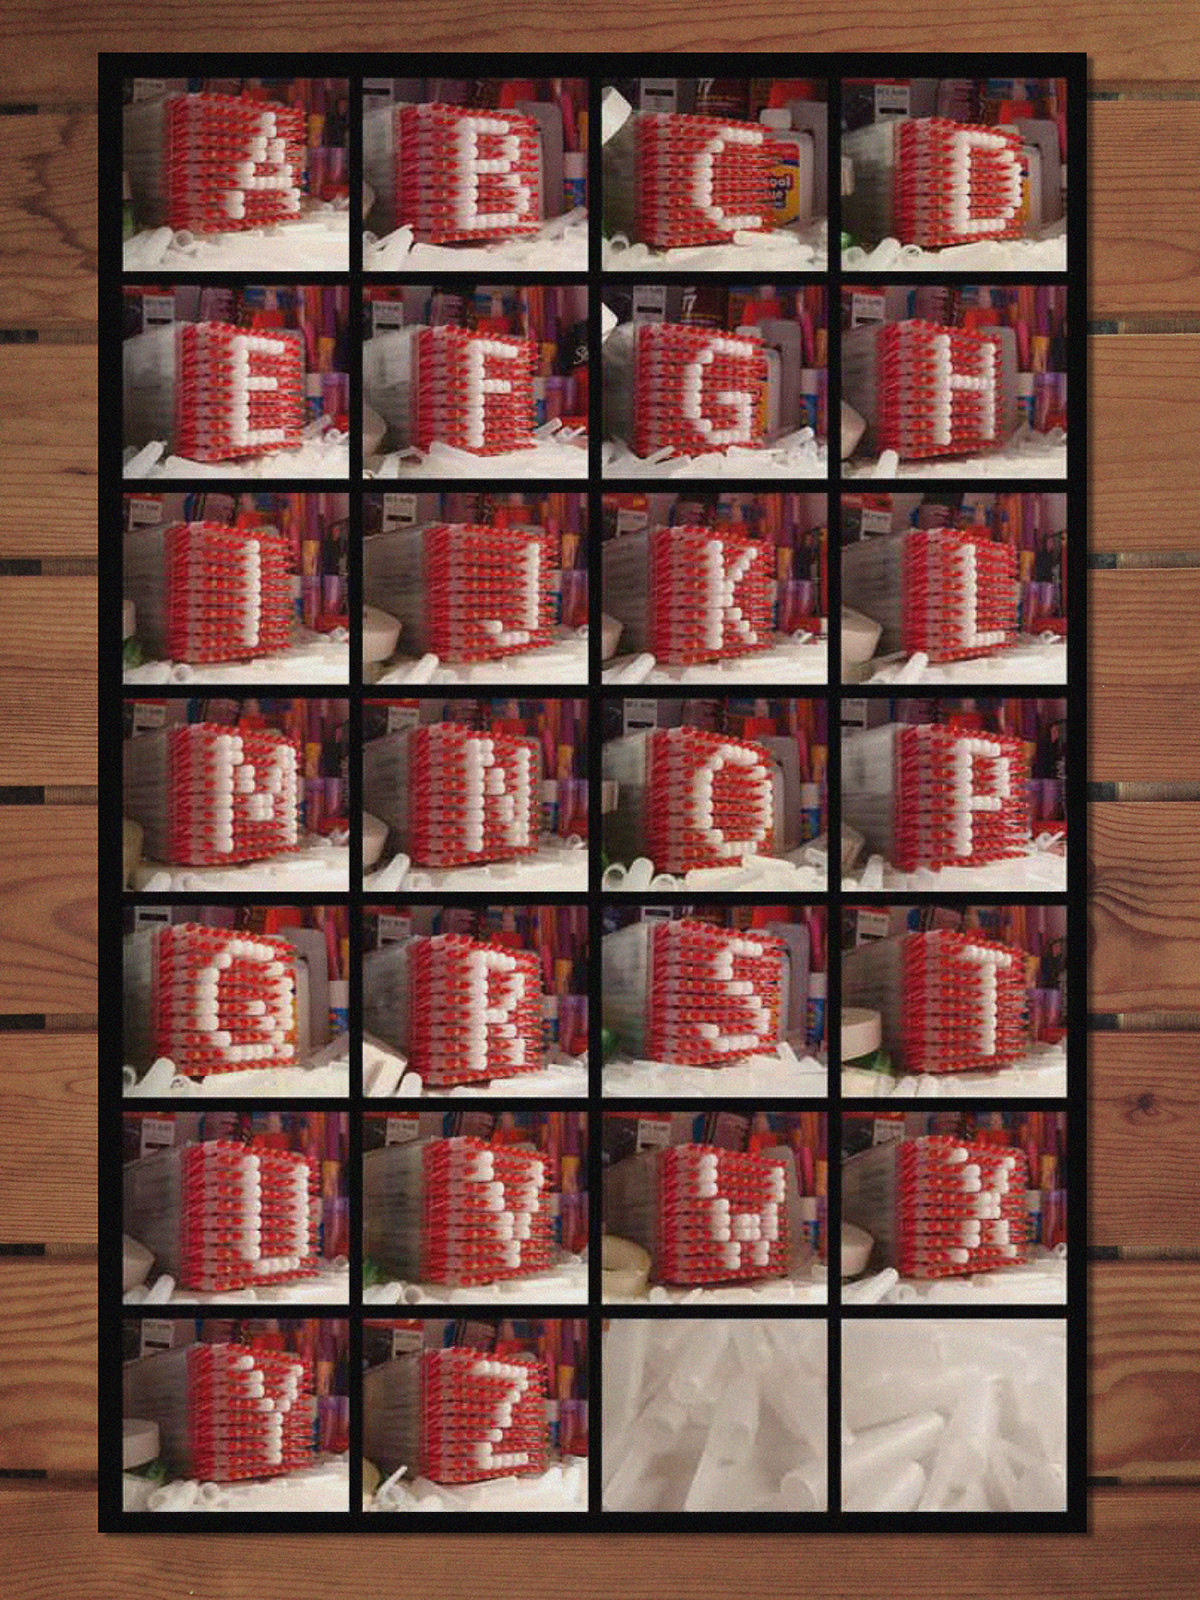 type pens photos alphabet DotMatrix